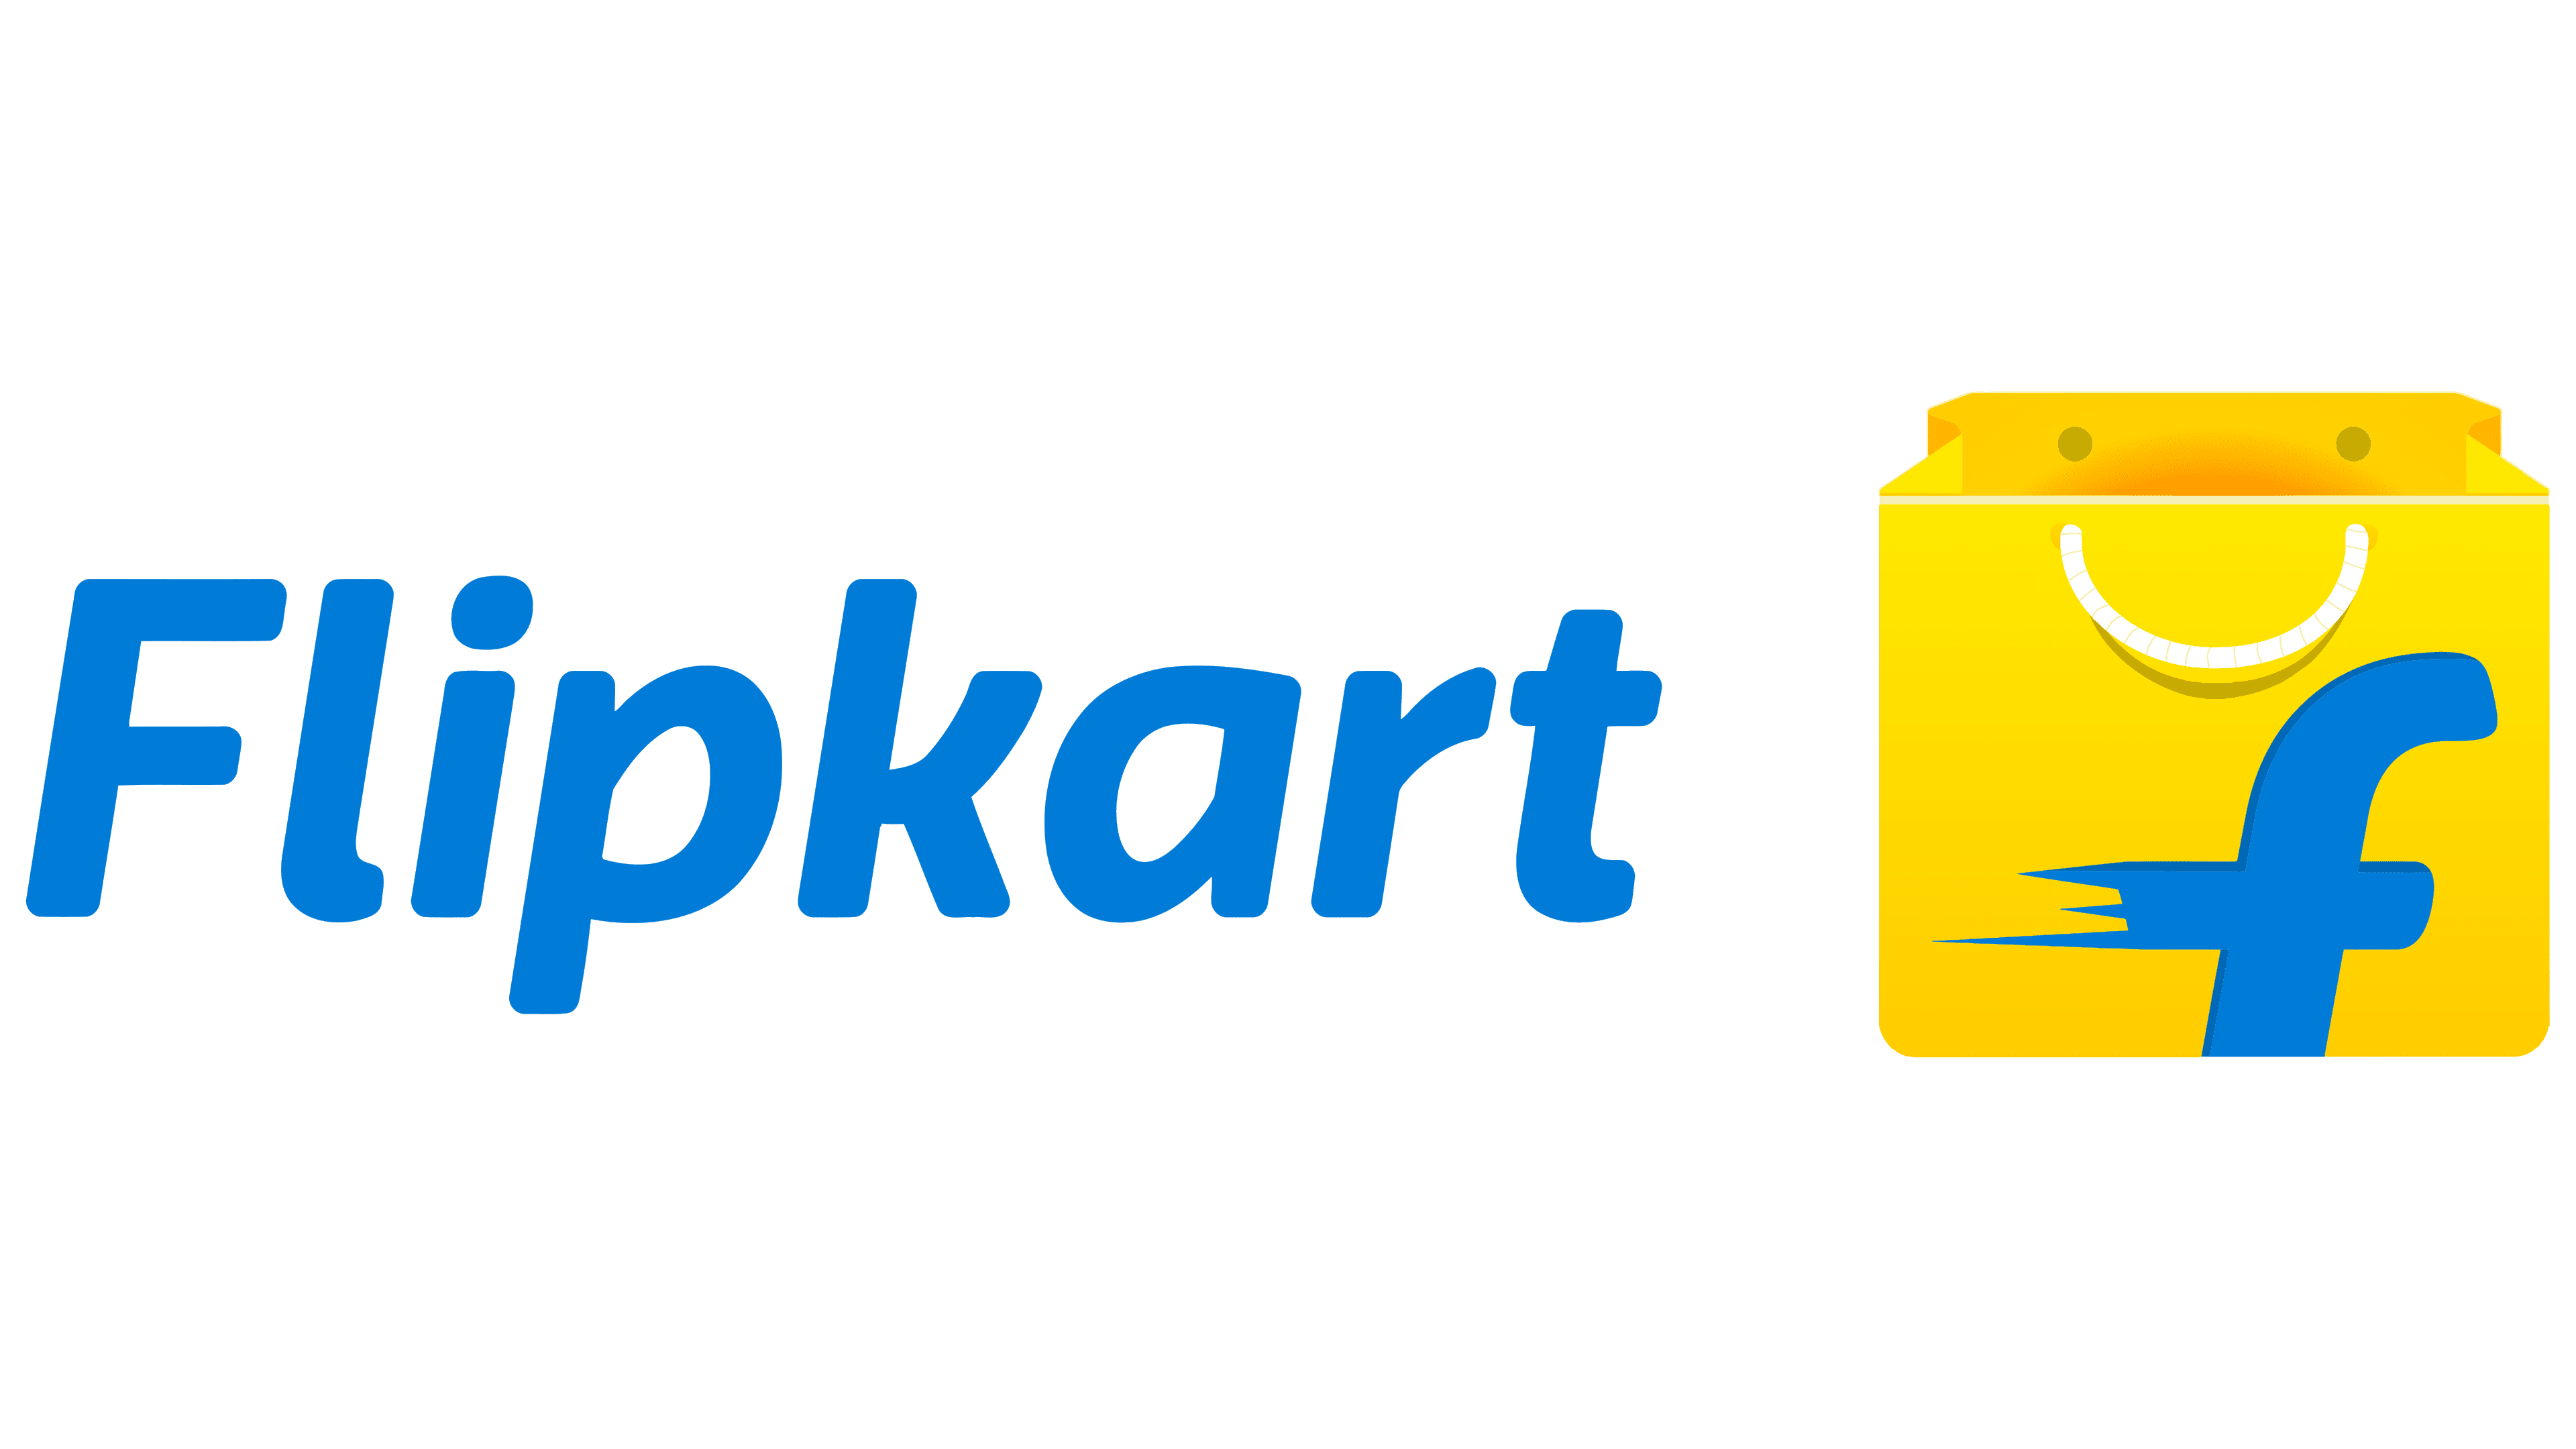 flipkart logo